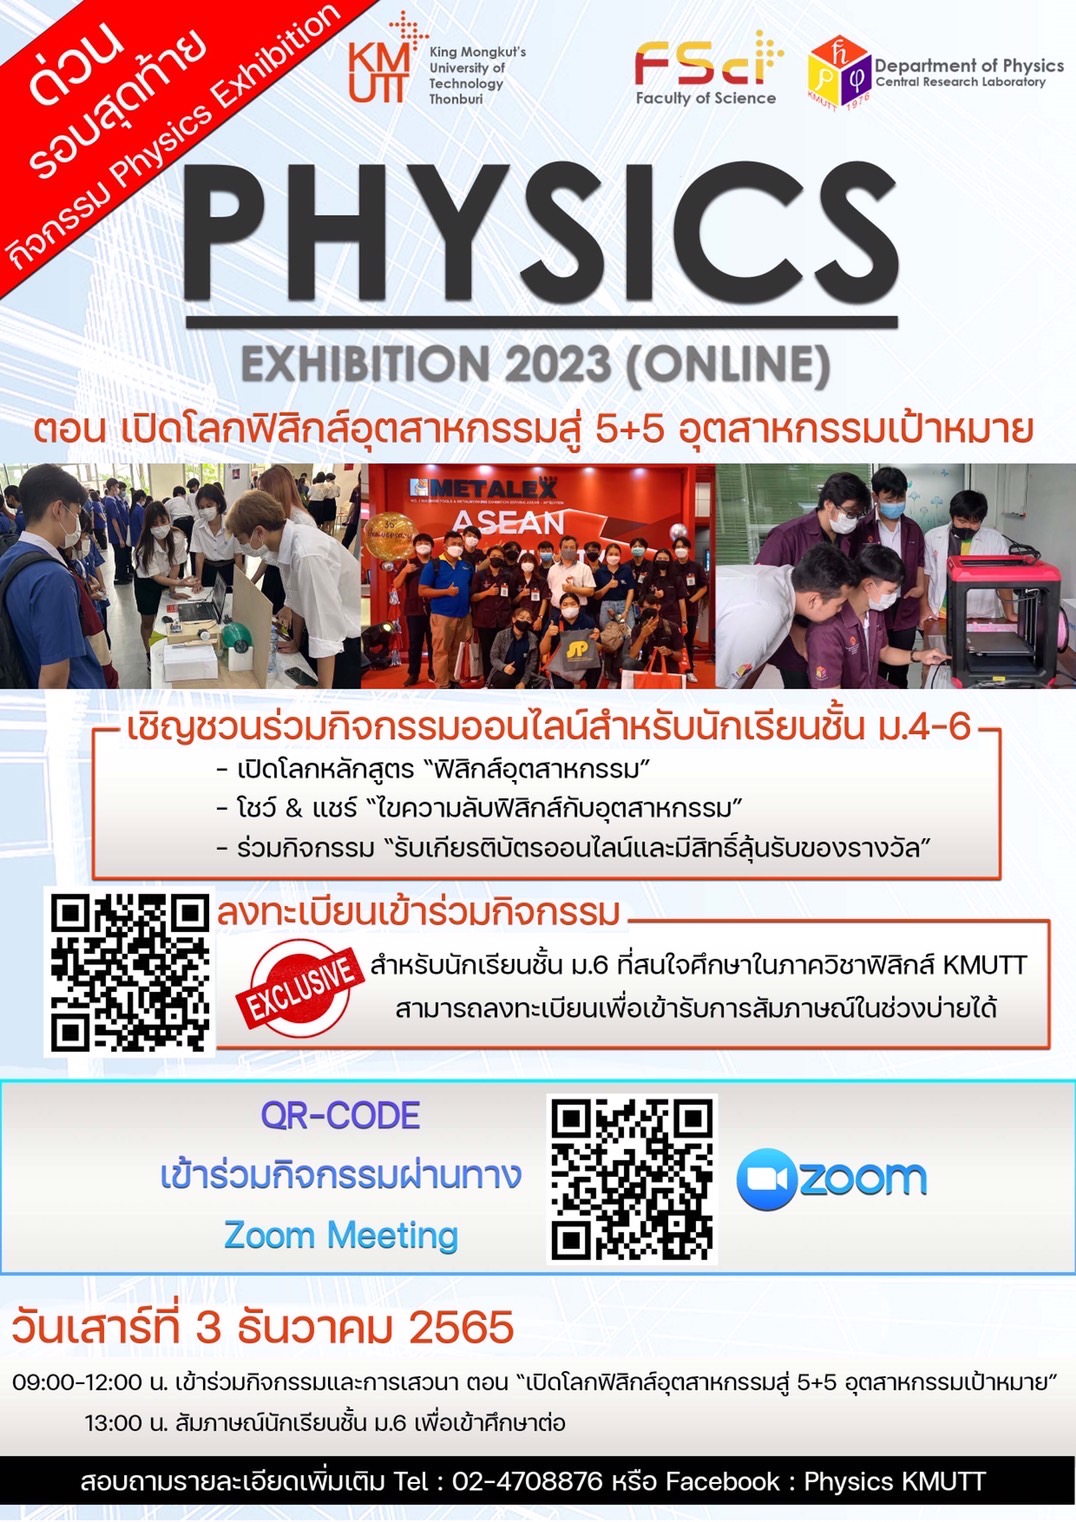 โครงการ Physics Exhibition 2023 (ออนไลน์) ตอน เปิดโลกฟิสิกส์อุตสาหกรรมสู่ 5+5 อุตสาหกรรมเป้าหมาย